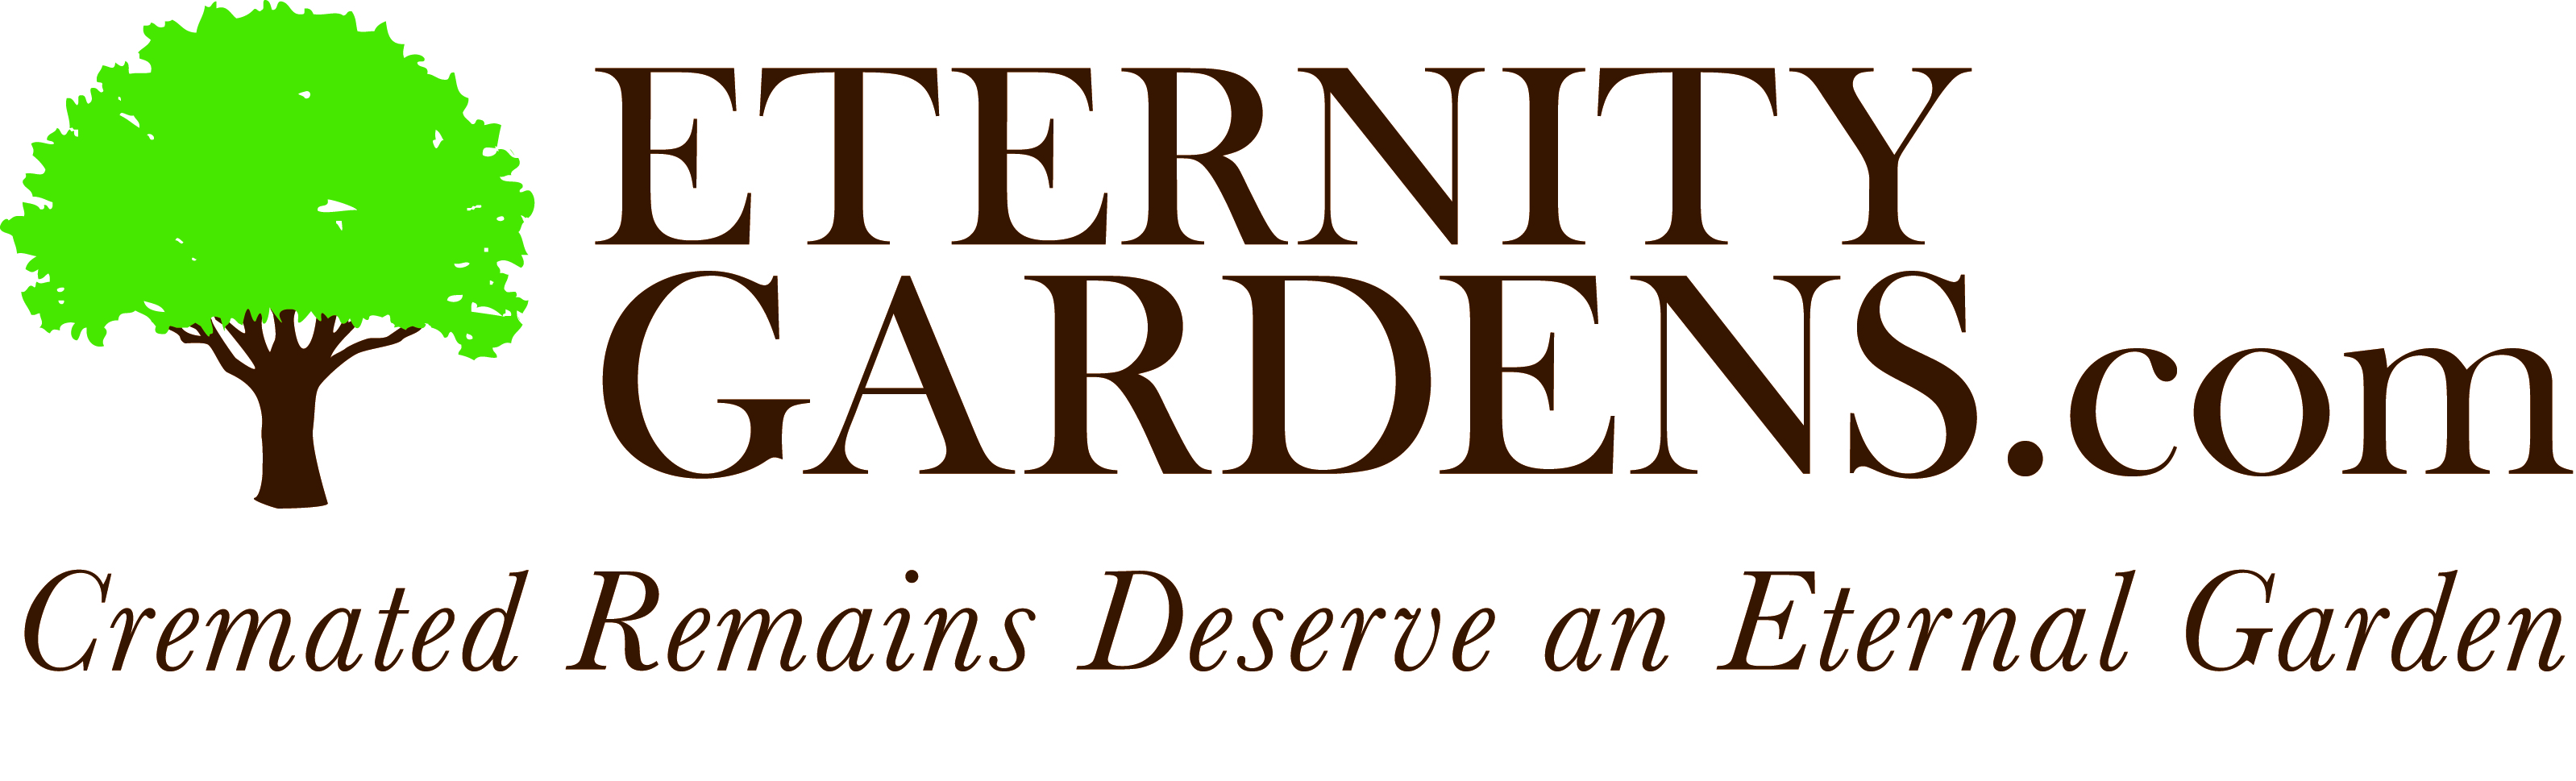 EternityGardens.com logo